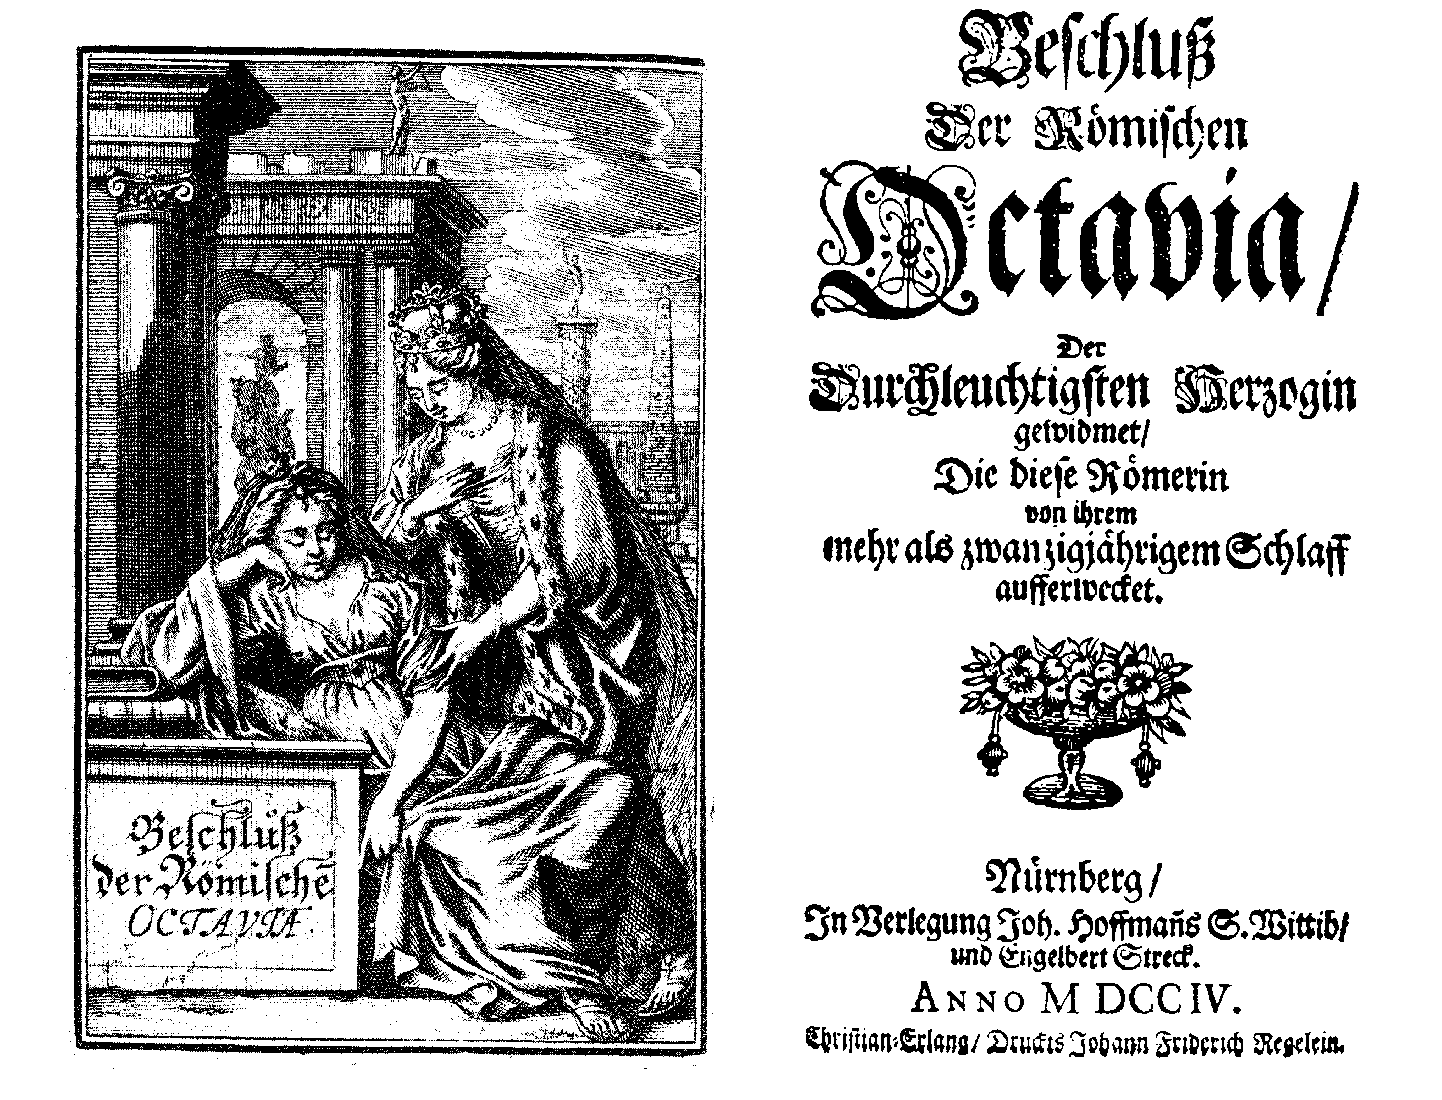 [Anton Ulrich Herzog zu Braunschweig und Lüneburg,]  Beschluß der römischen Octavia, [vol. 5] (Nürnberg: J. Hoffmanns Wittib/ E. Streck, 1704 [korr. 1706]).